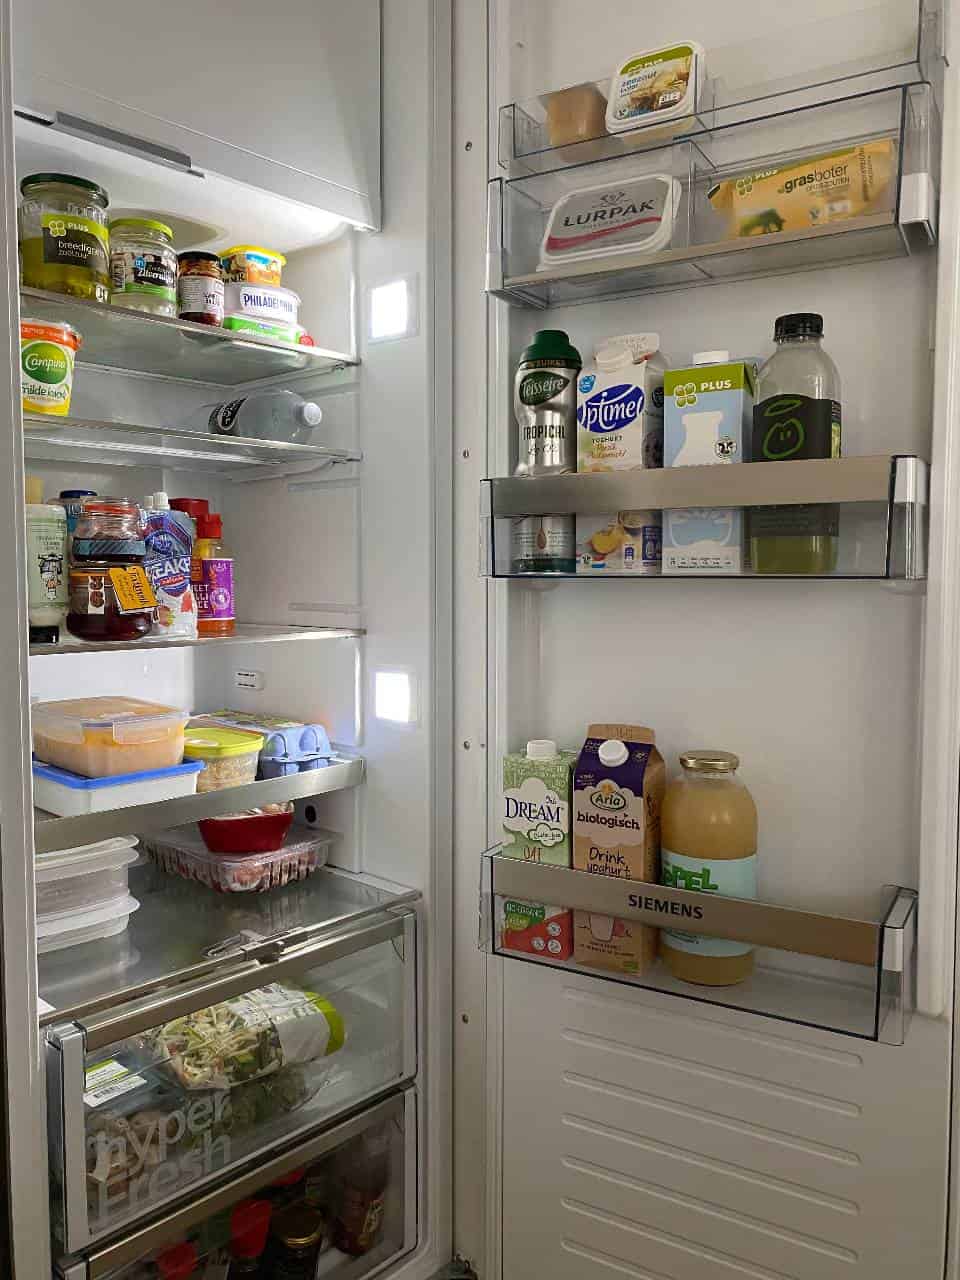 10 x tips tegen voedselverspilling. Zet je koelkast op 4 graden en zorg voor een juiste indeling. Lees de blog voor alle tips om minder voedsel te verspillen #duurzaamheid